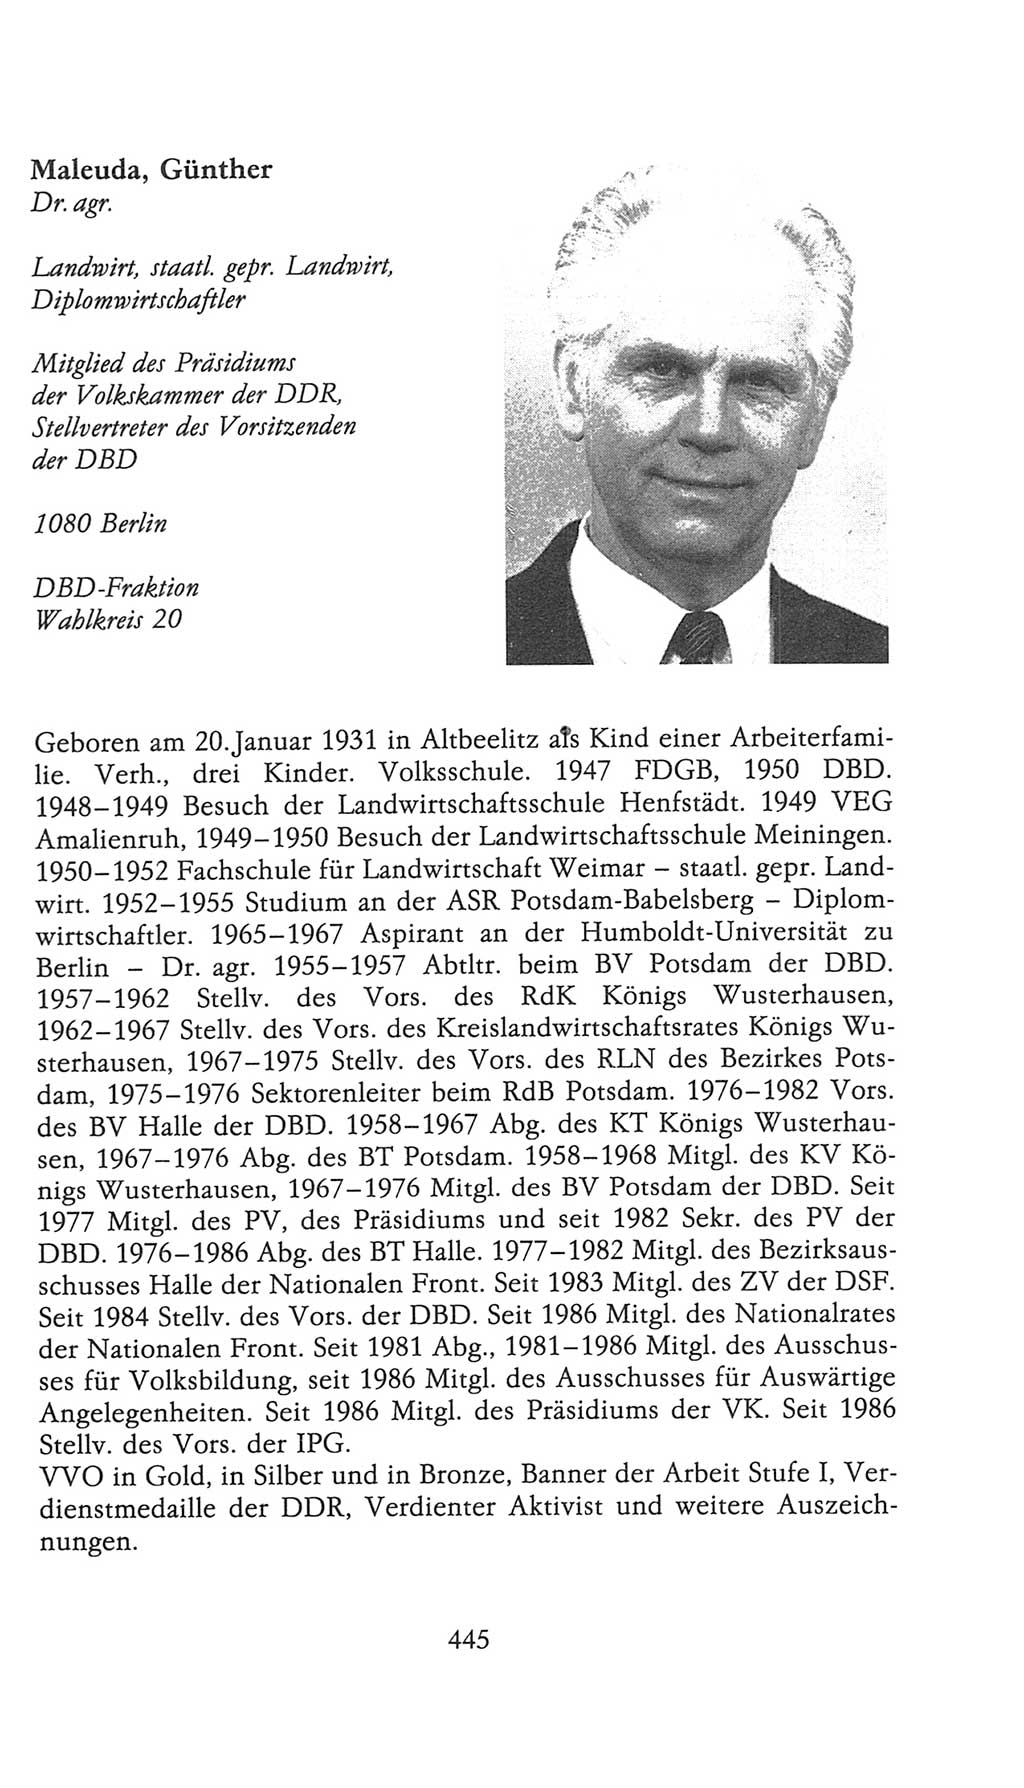 Volkskammer (VK) der Deutschen Demokratischen Republik (DDR), 9. Wahlperiode 1986-1990, Seite 445 (VK. DDR 9. WP. 1986-1990, S. 445)